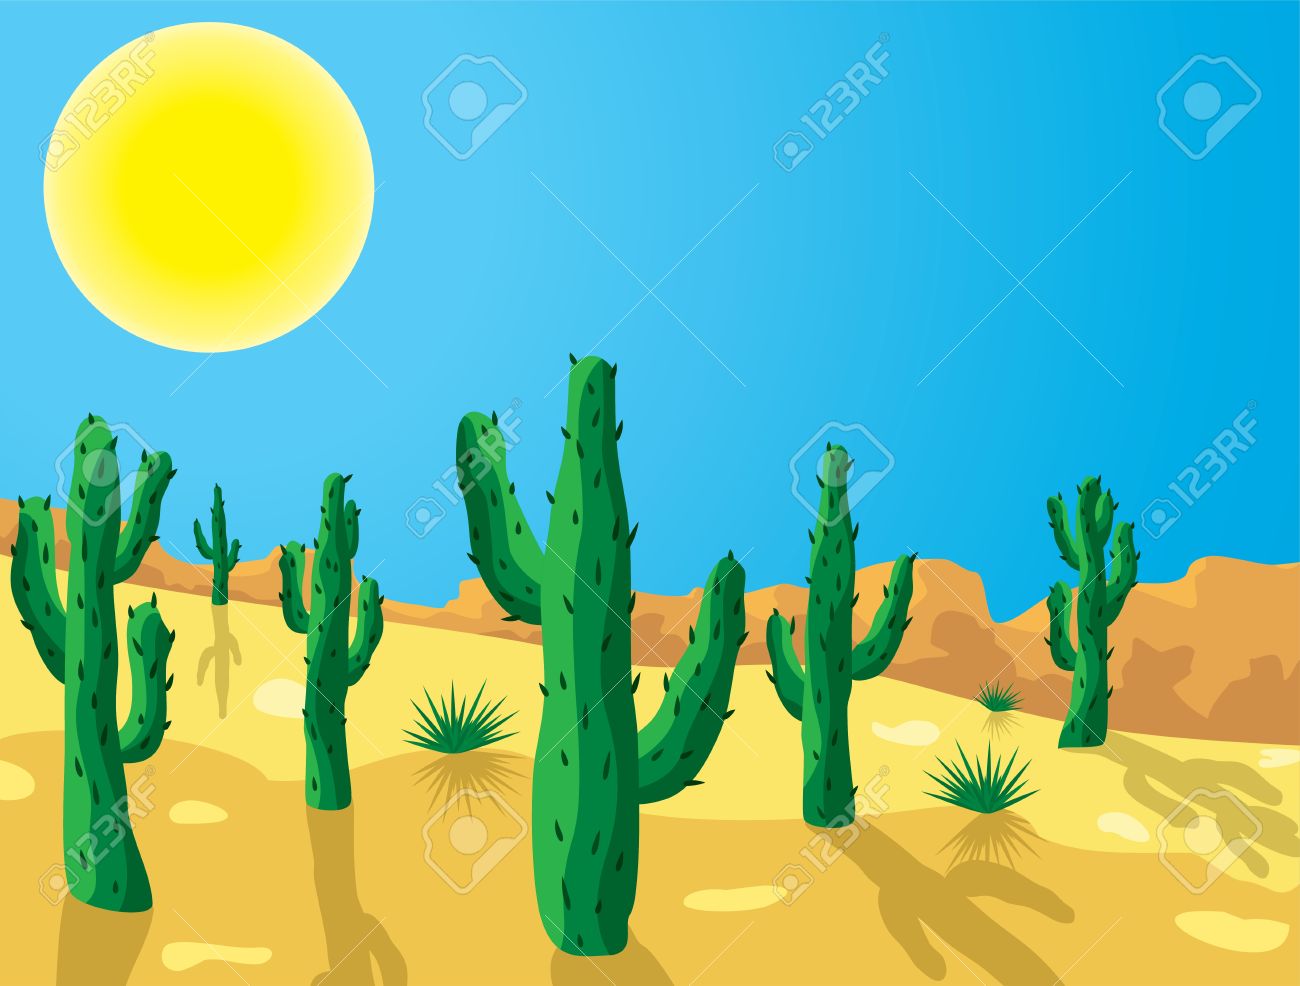 desert clipart desert place